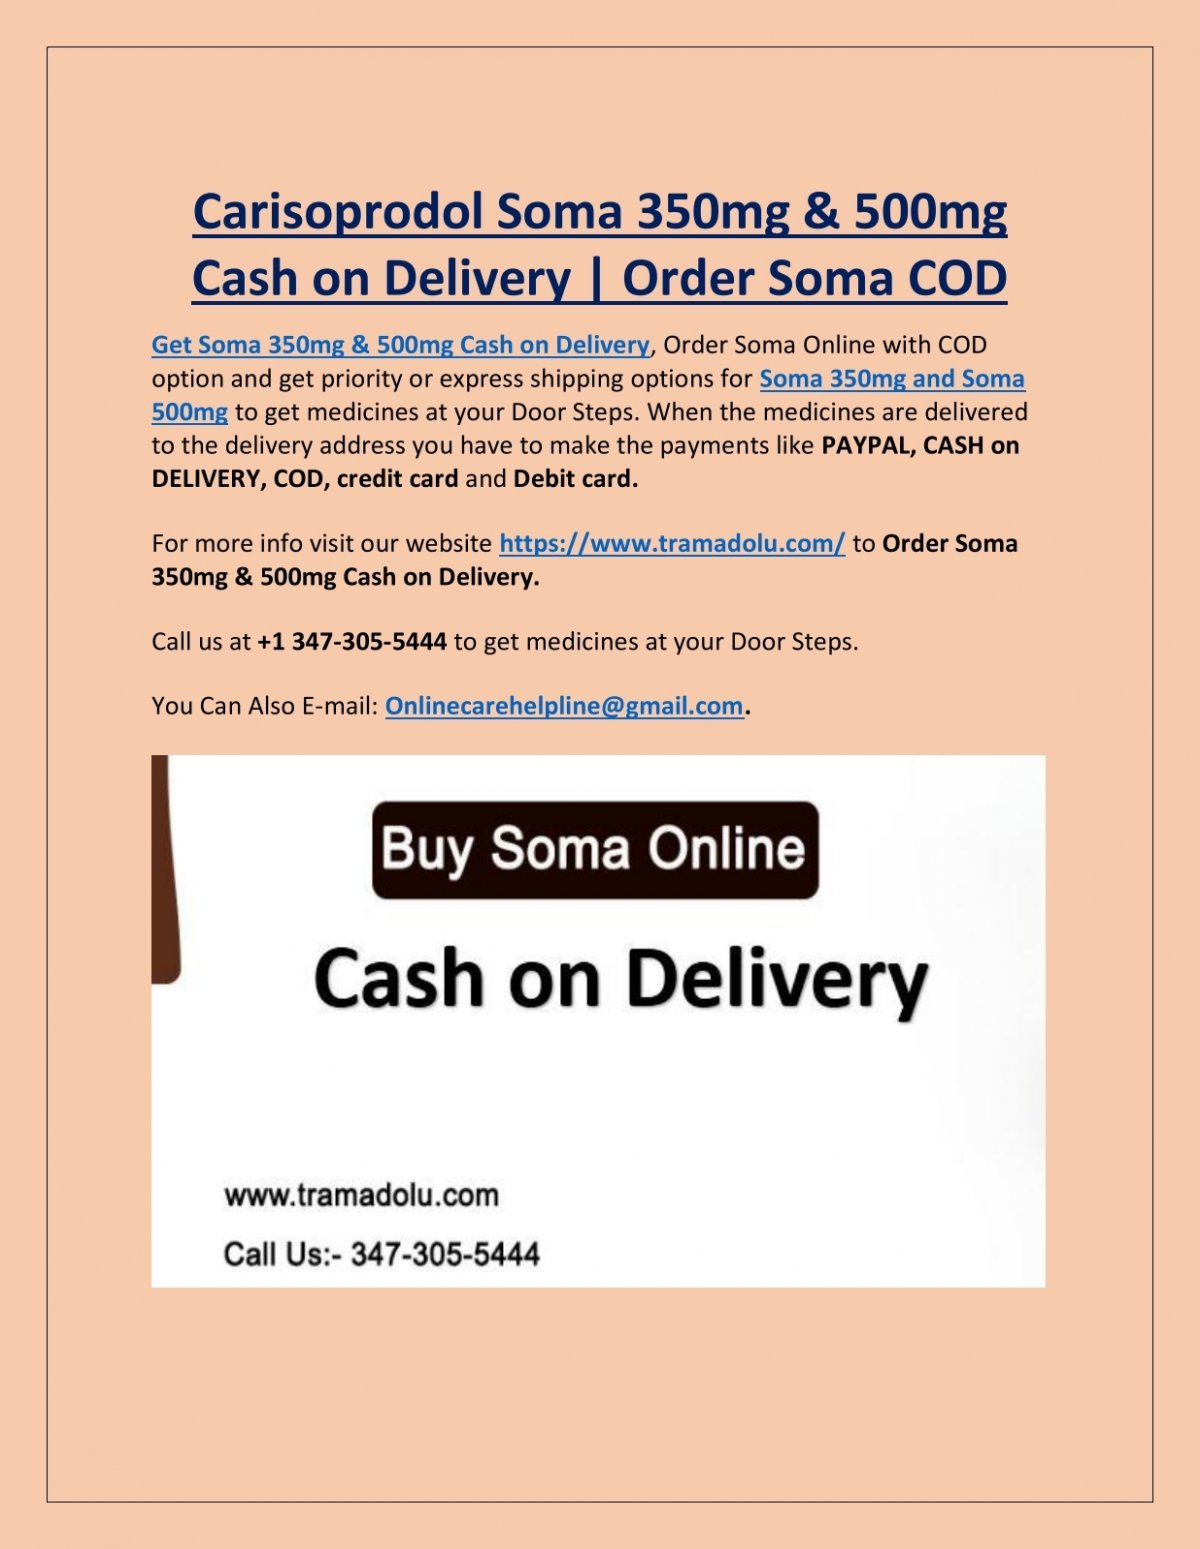 Buy Soma Online - Buy Soma (Carisoprodol) 350mg 500mg Online